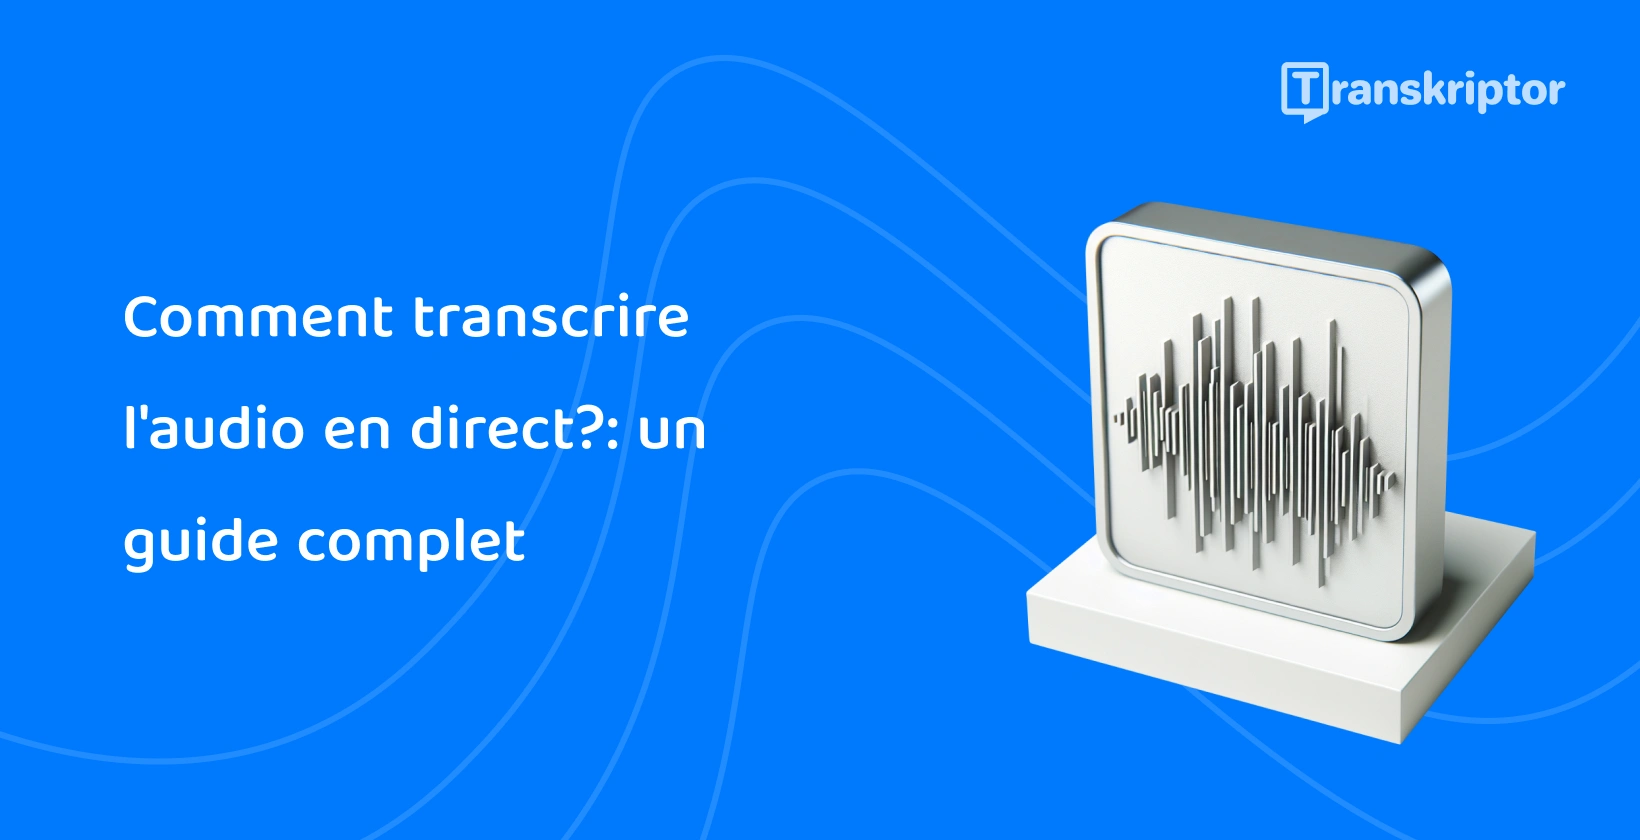 L’illustration des ondes sonores sur un moniteur représente le processus de transcription audio en direct tel que détaillé dans le guide.